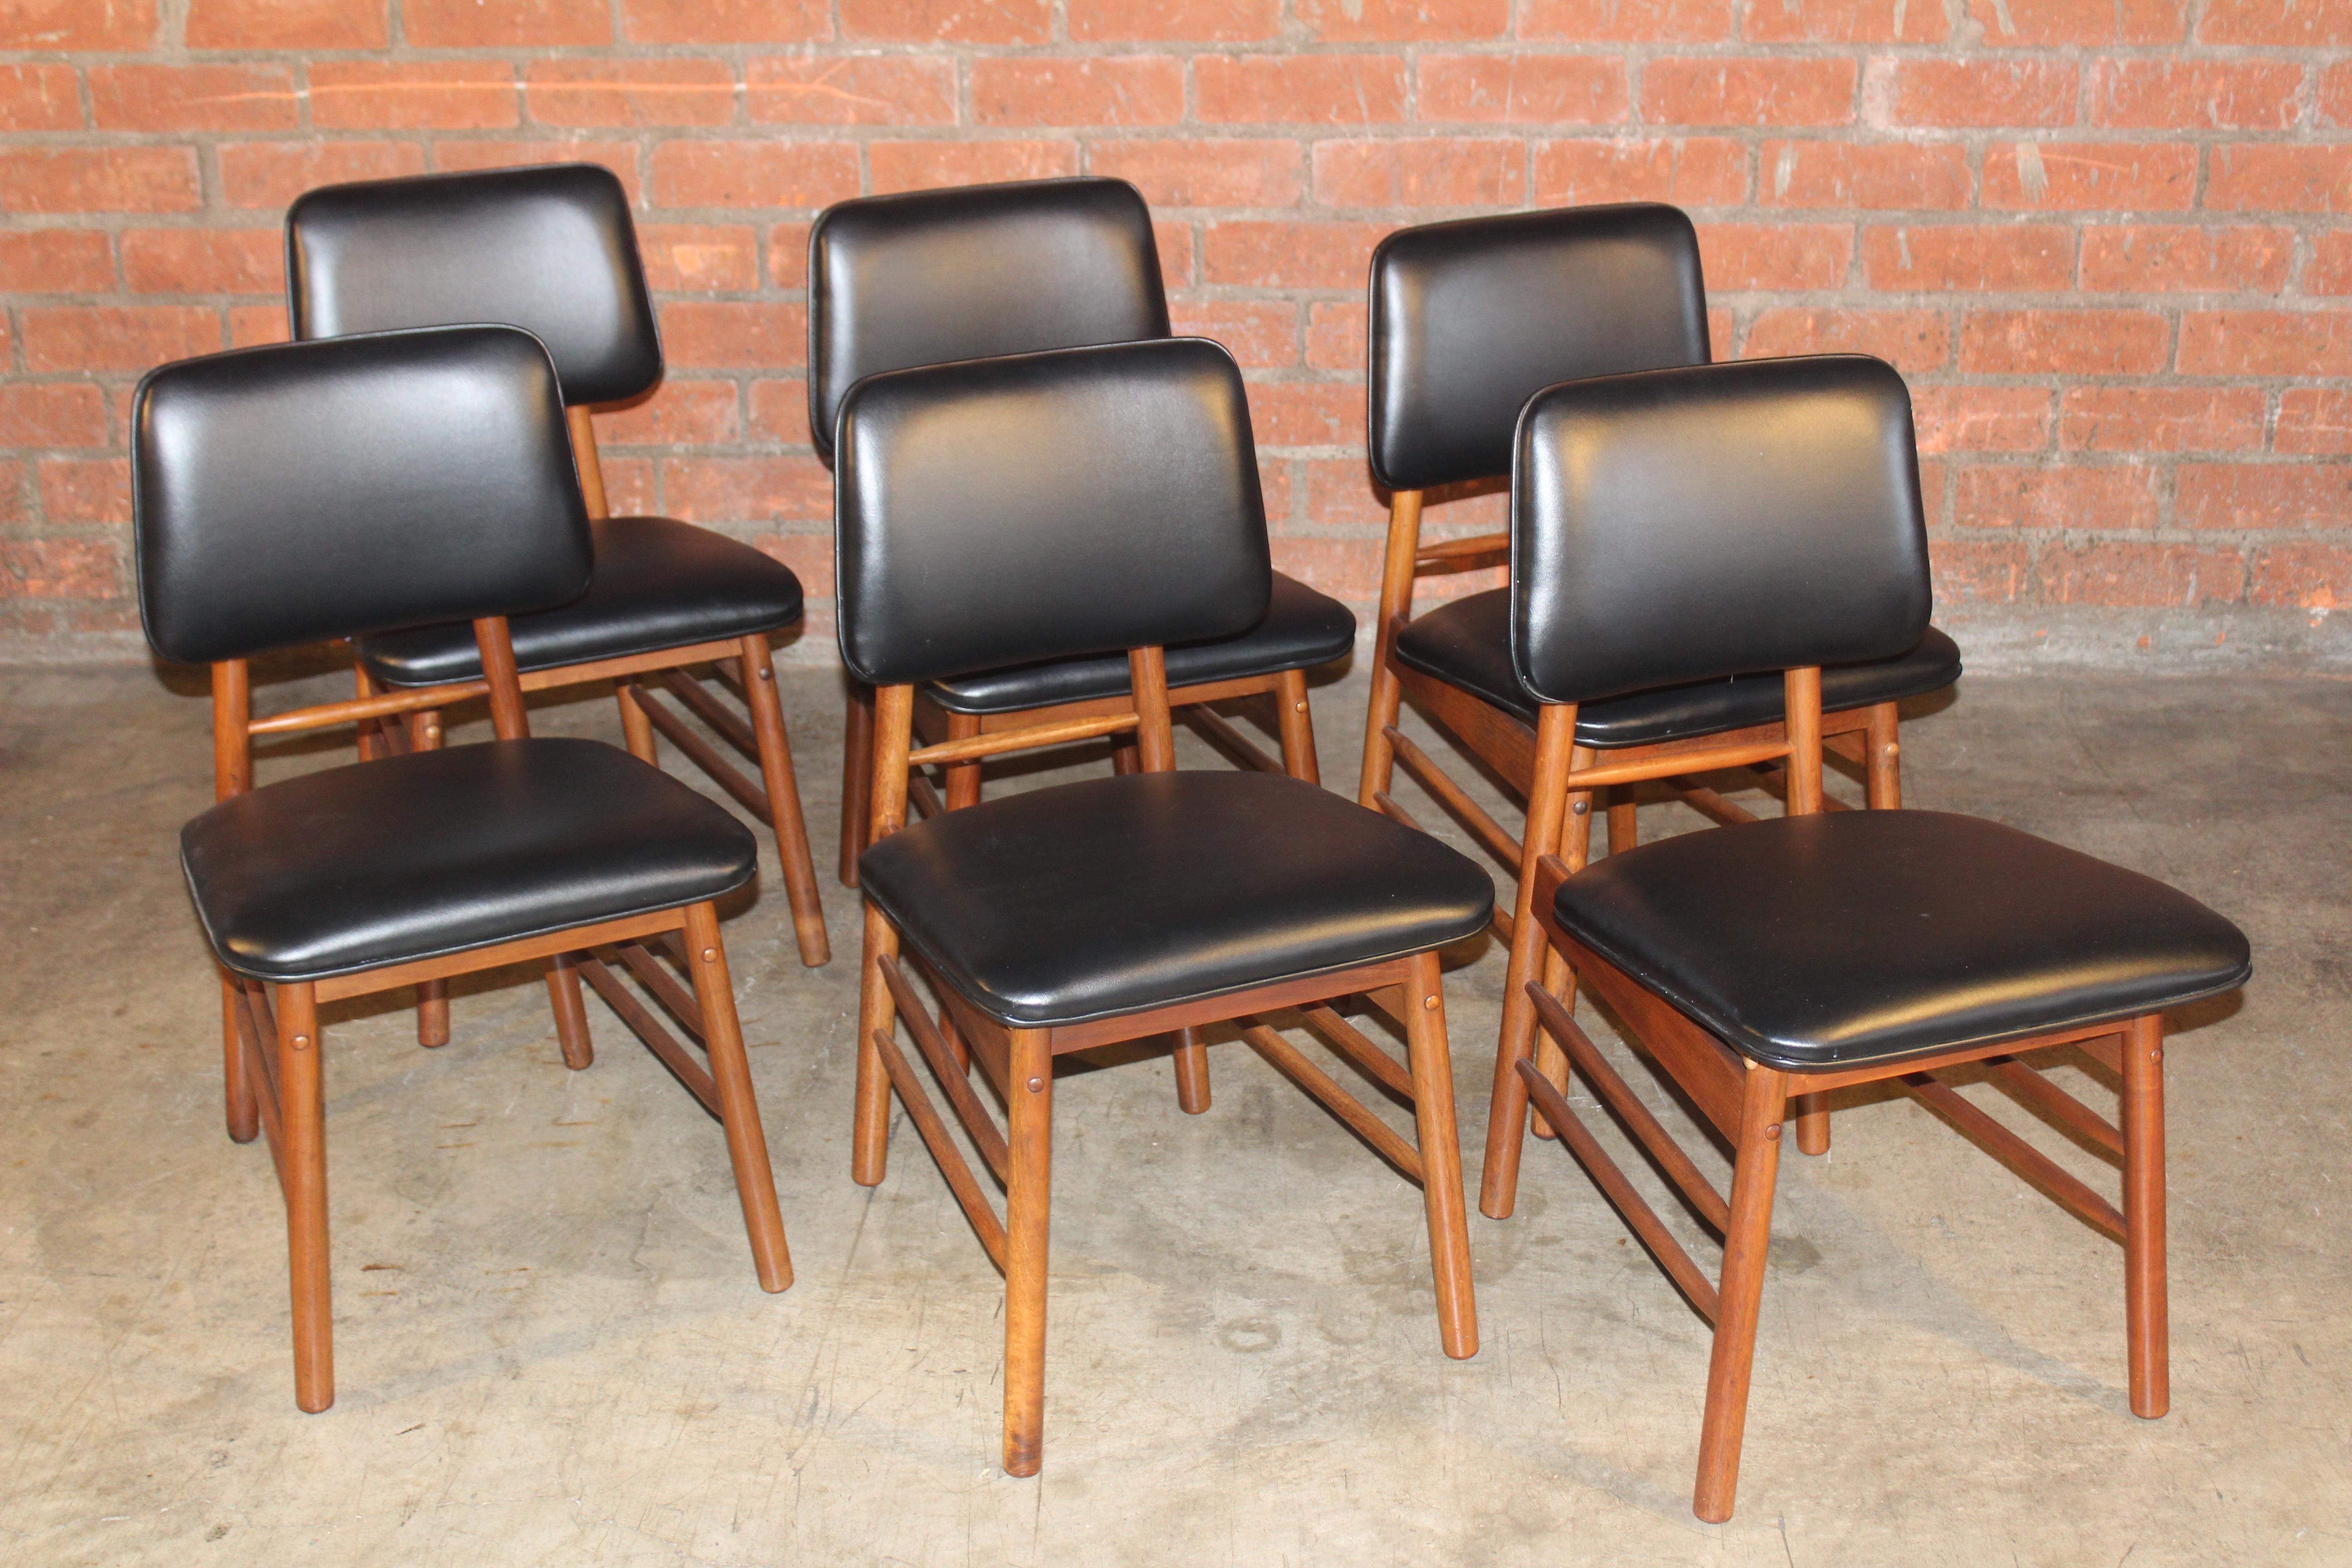 Ein Satz von sechs Esszimmerstühlen, entworfen von Greta Grossman, USA, 1950er Jahre. Gefertigt aus massivem Nussbaumholz mit neuer Kunstlederpolsterung. Insgesamt wunderbaren Zustand mit geringen Gebrauchsspuren. Ein Stuhl ist mit einer Trage an